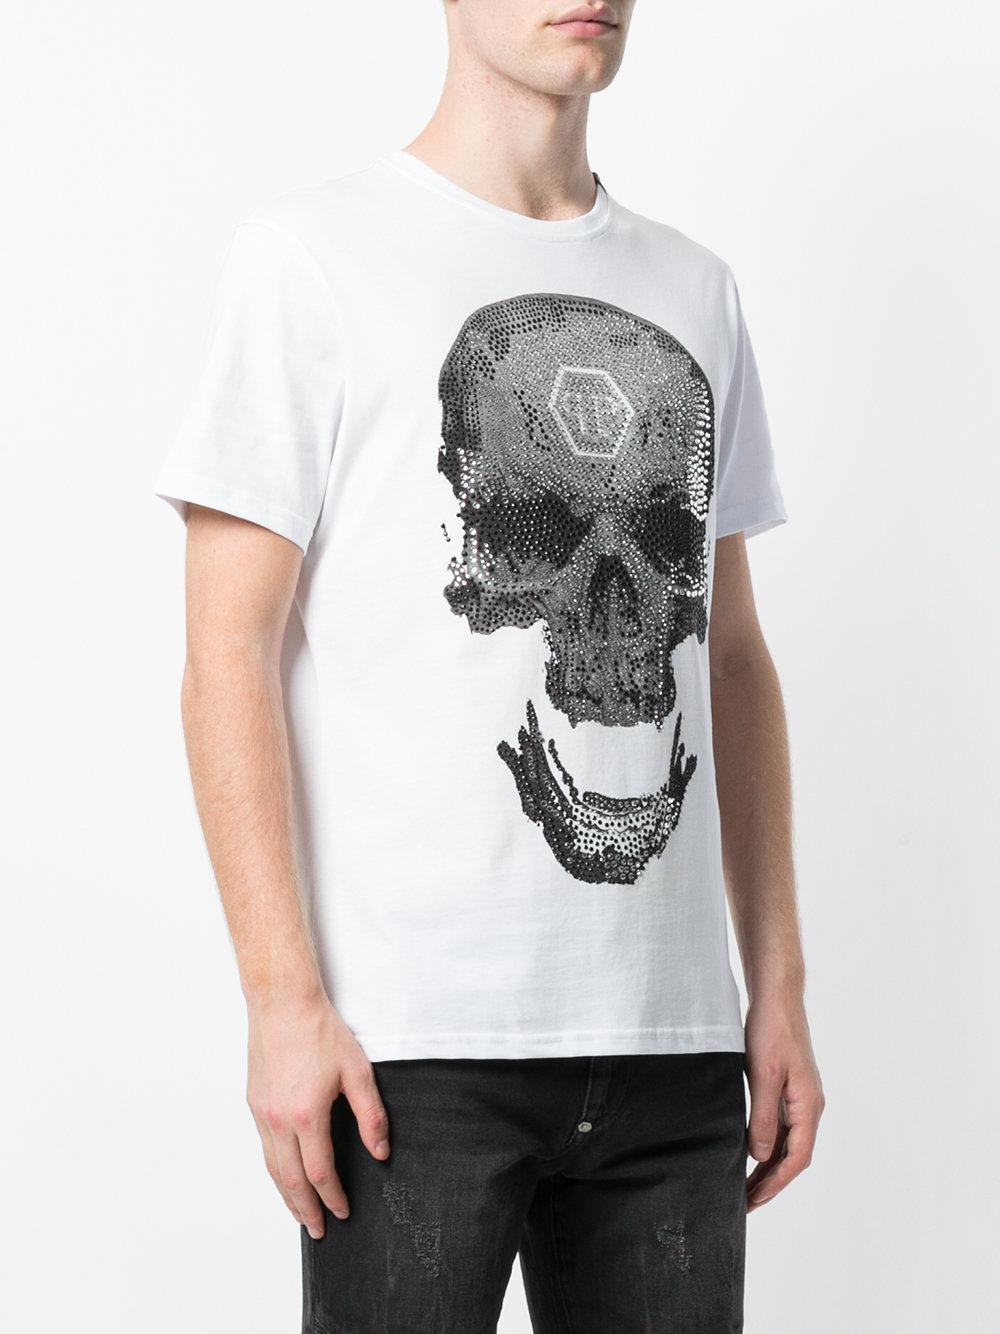 Philipp Plein Strass Skull T-shirt in White for Men - Lyst